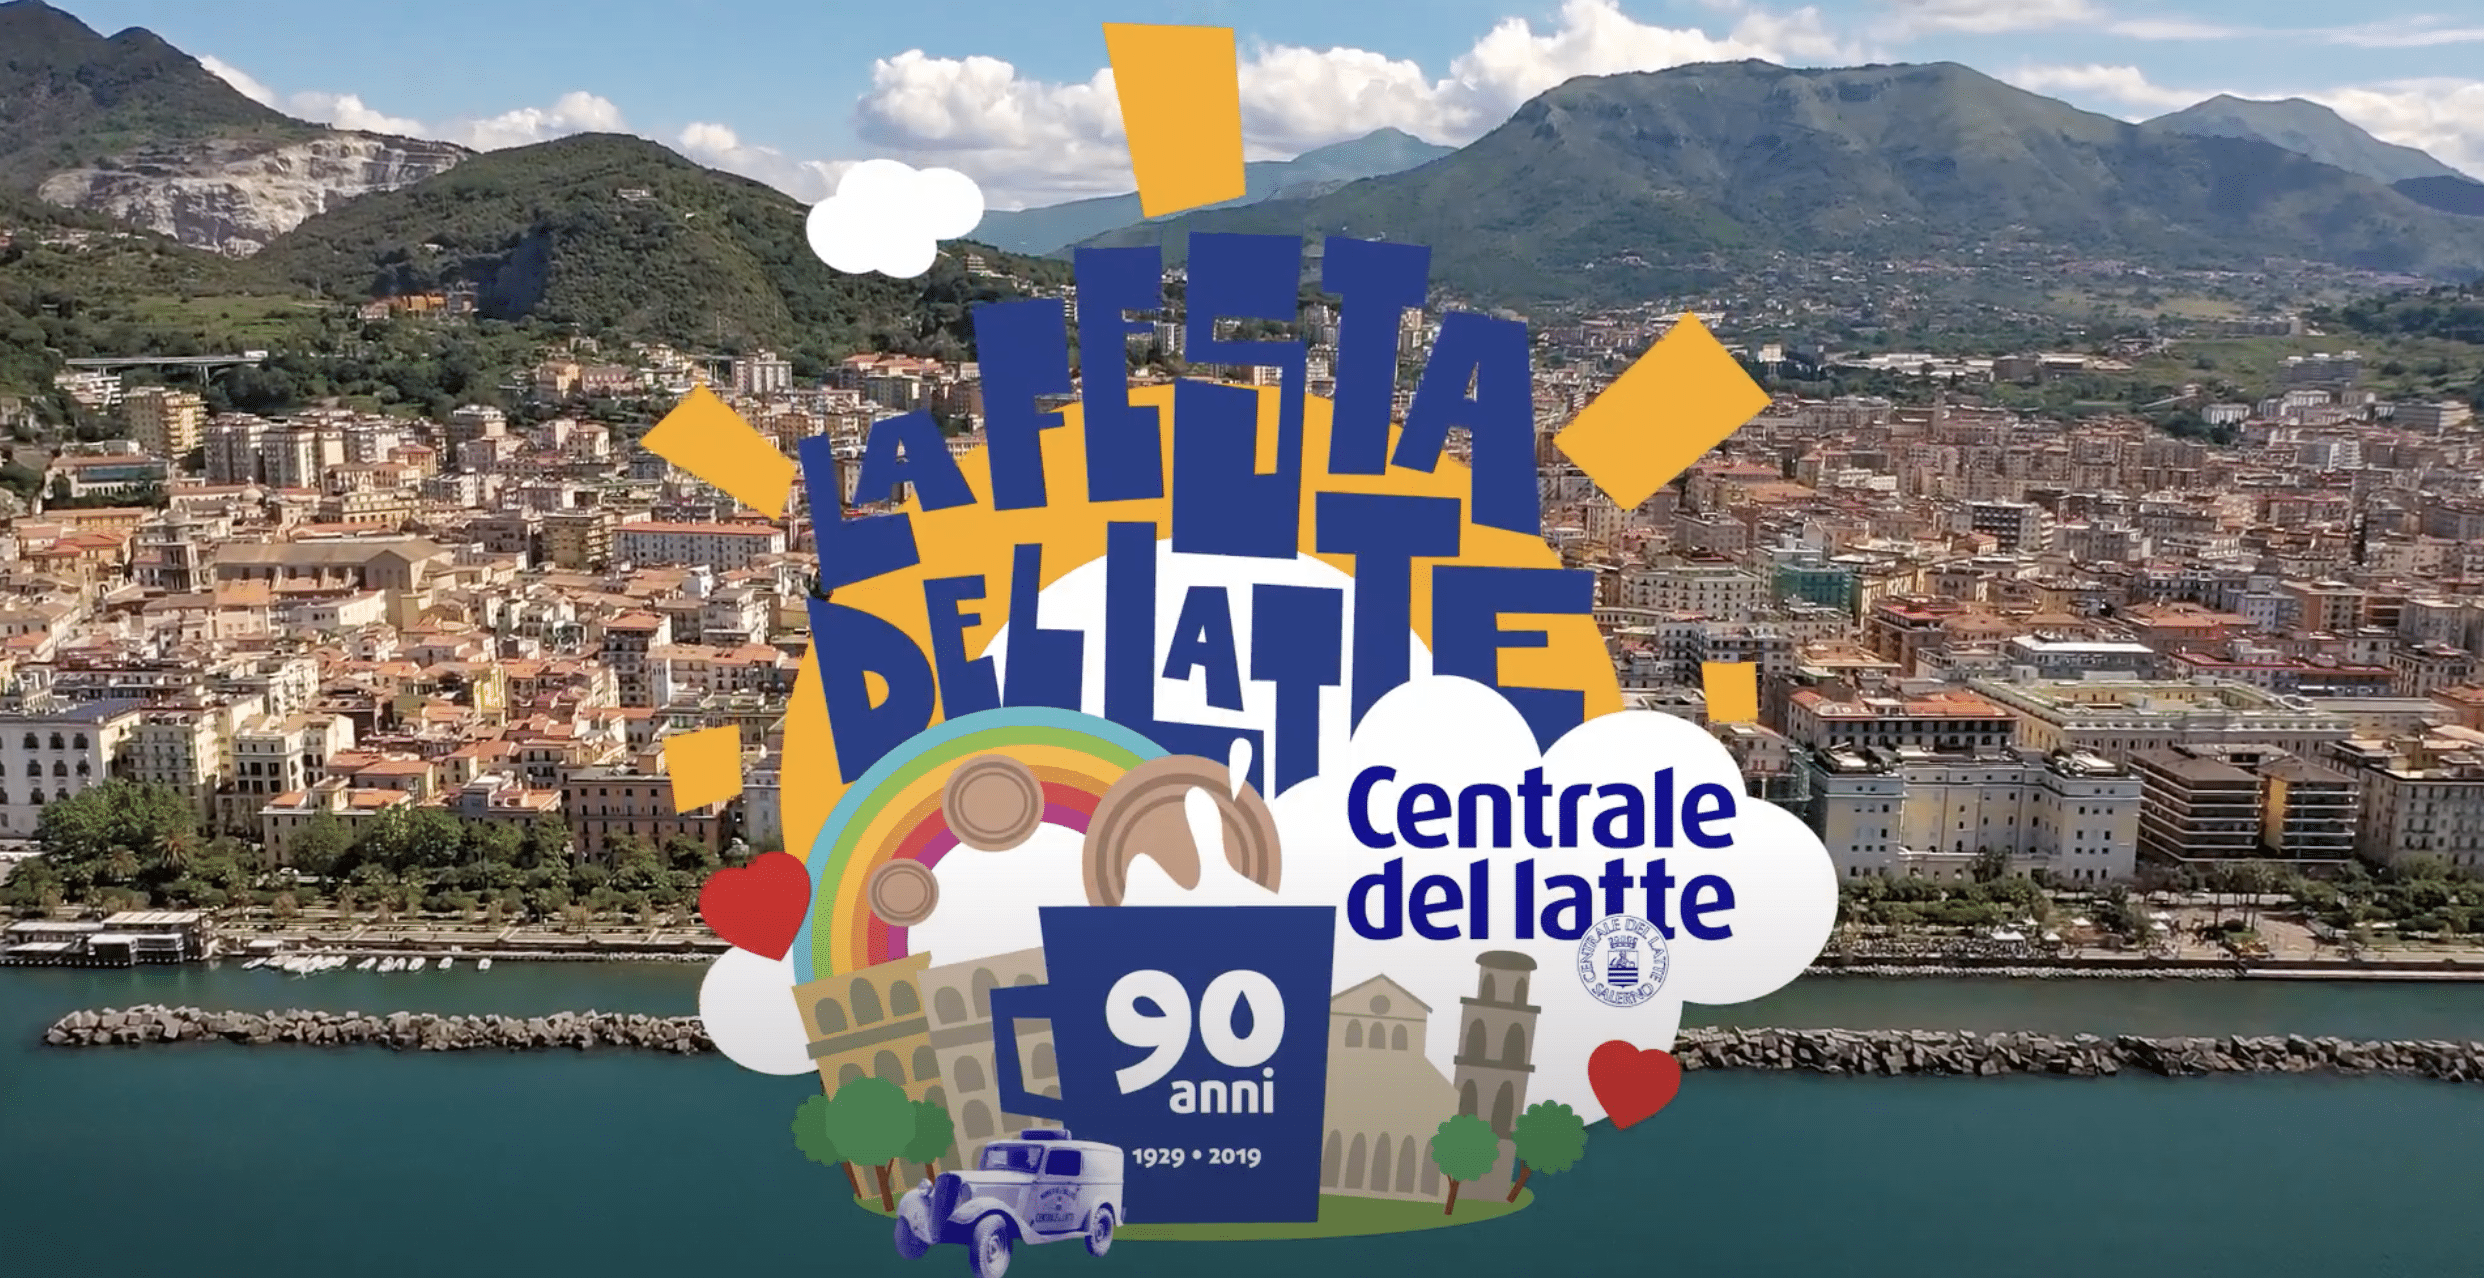 Festa del Latte - Centrale del Latte di Salerno